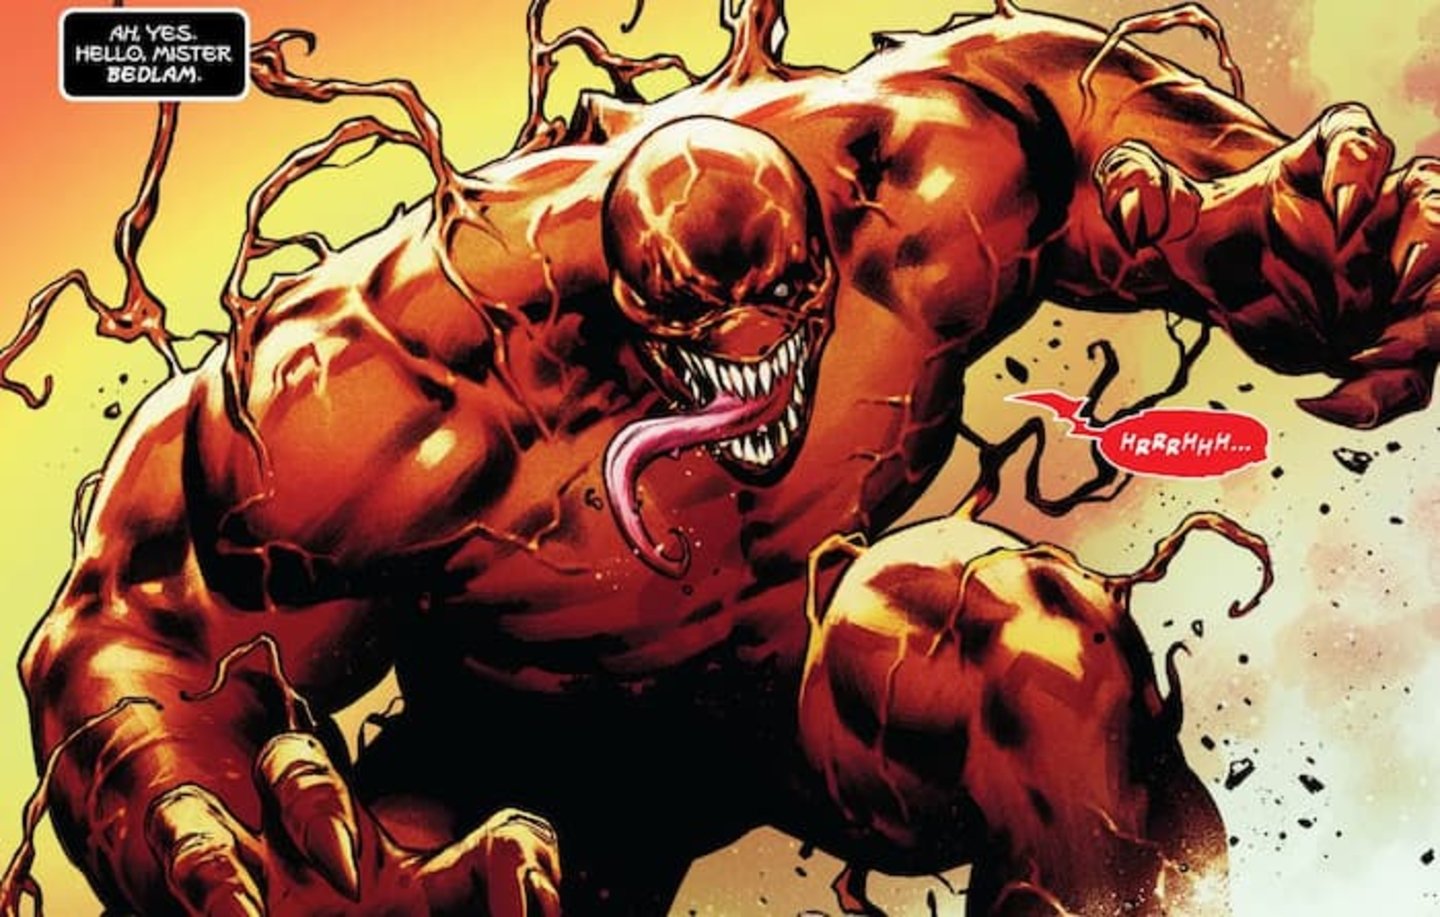 Bedlam, la nueva forma de Venom, guarda mucho parecido con Hulk